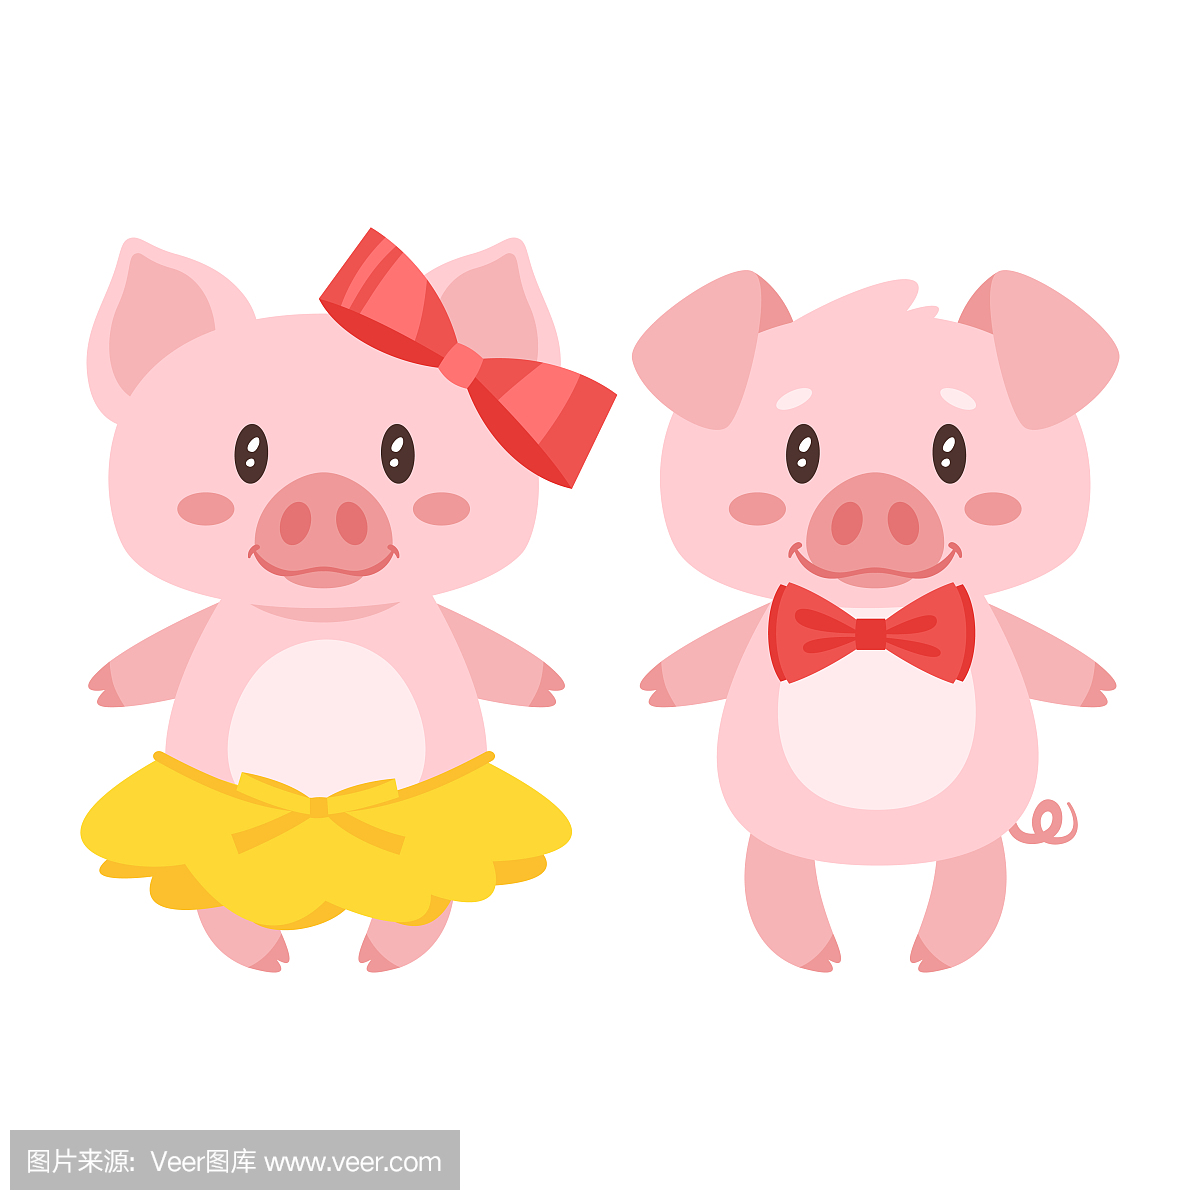 猪的性格:男孩和女孩